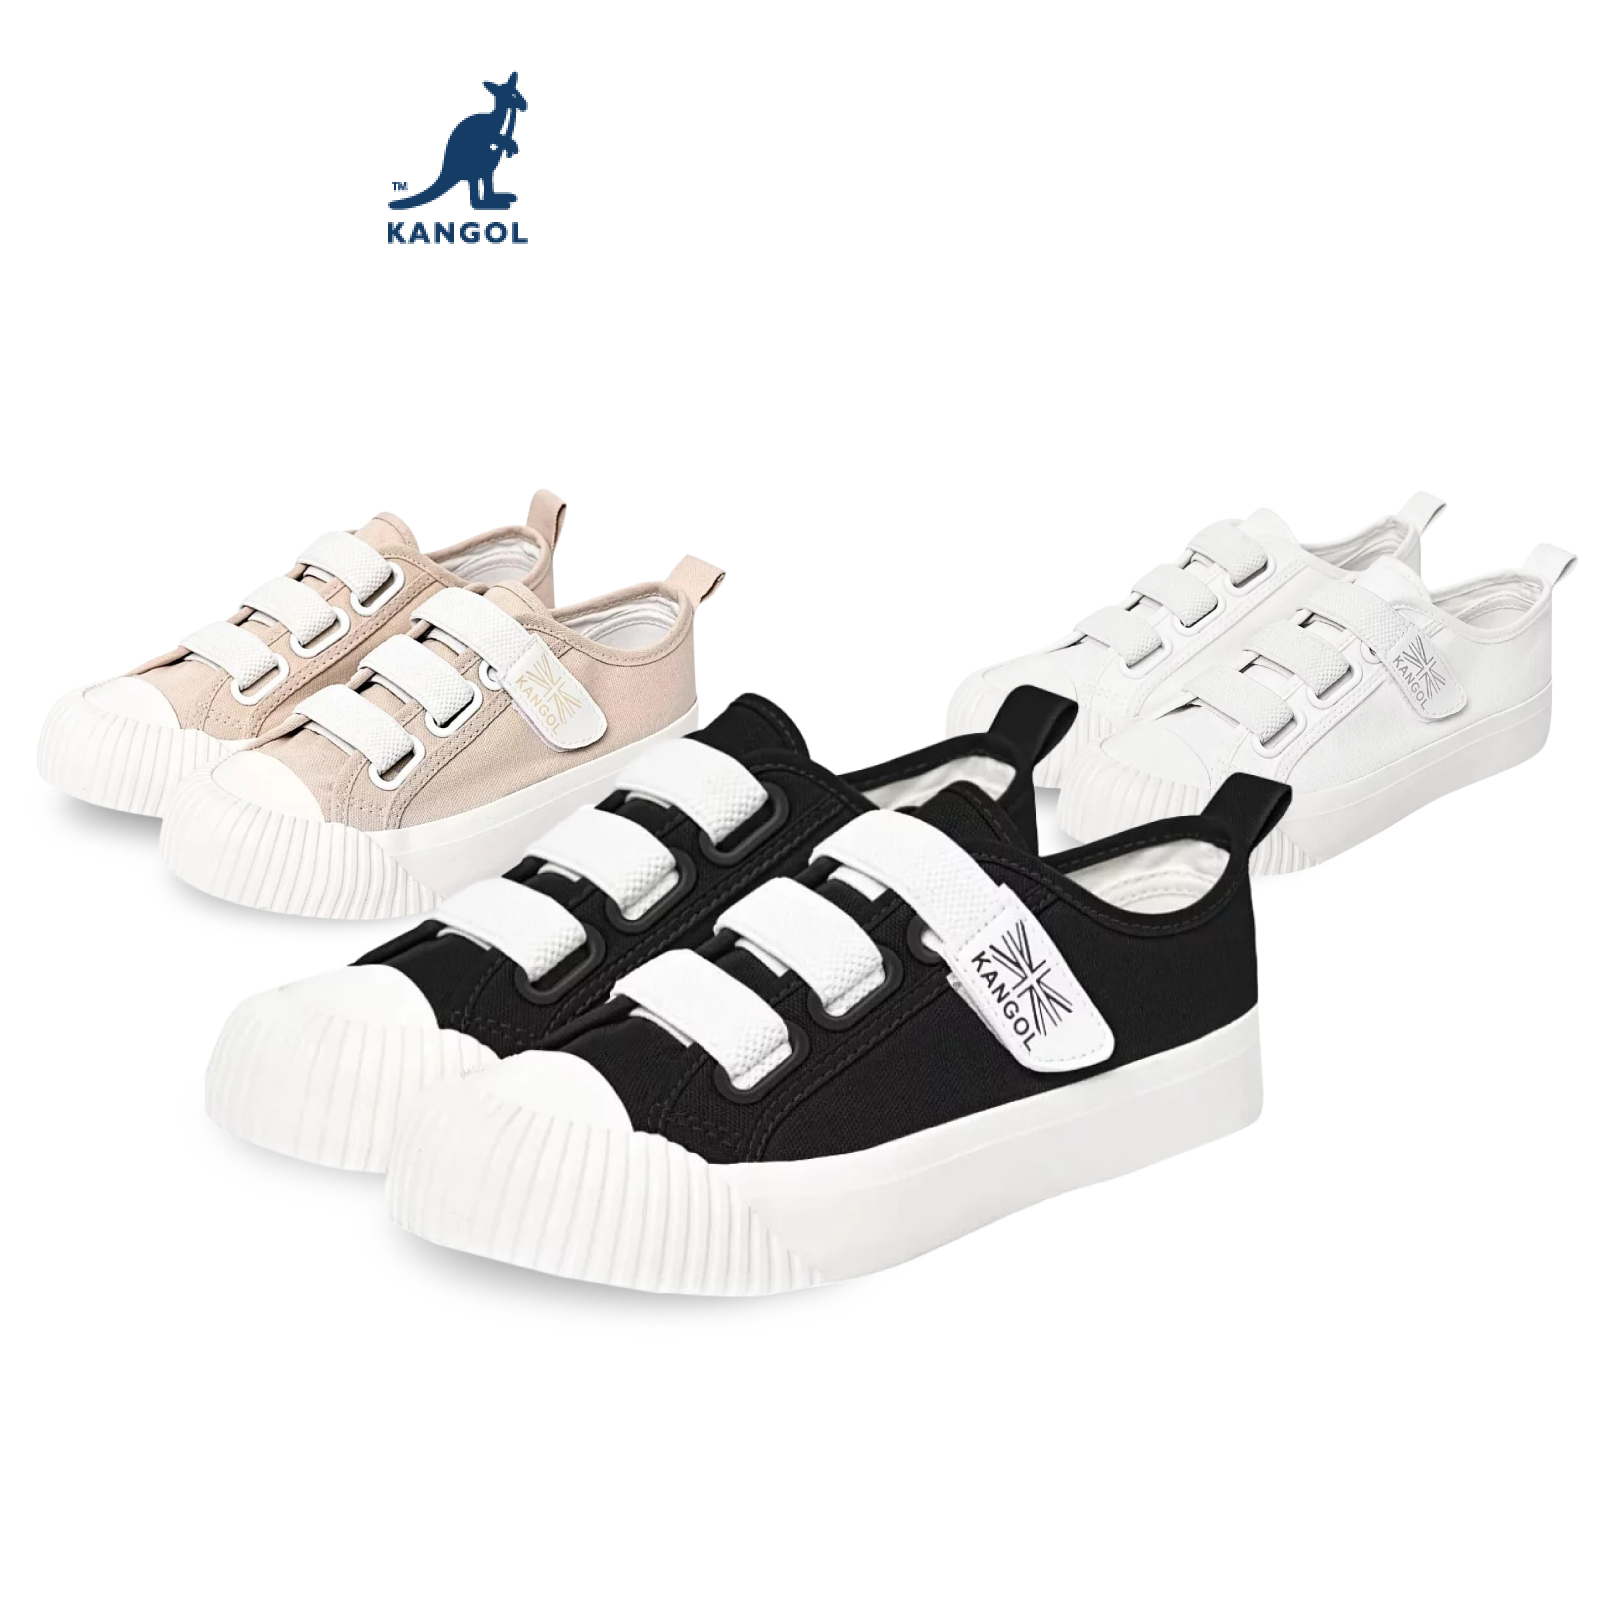 [ไซส์ใหม่มาเพิ่มพร้อมส่ง!] KANGOL Sneakers unisex รองเท้าผ้าใบ รุ่น Velco แบบแปะ สีดำ,ขาว,ครีม